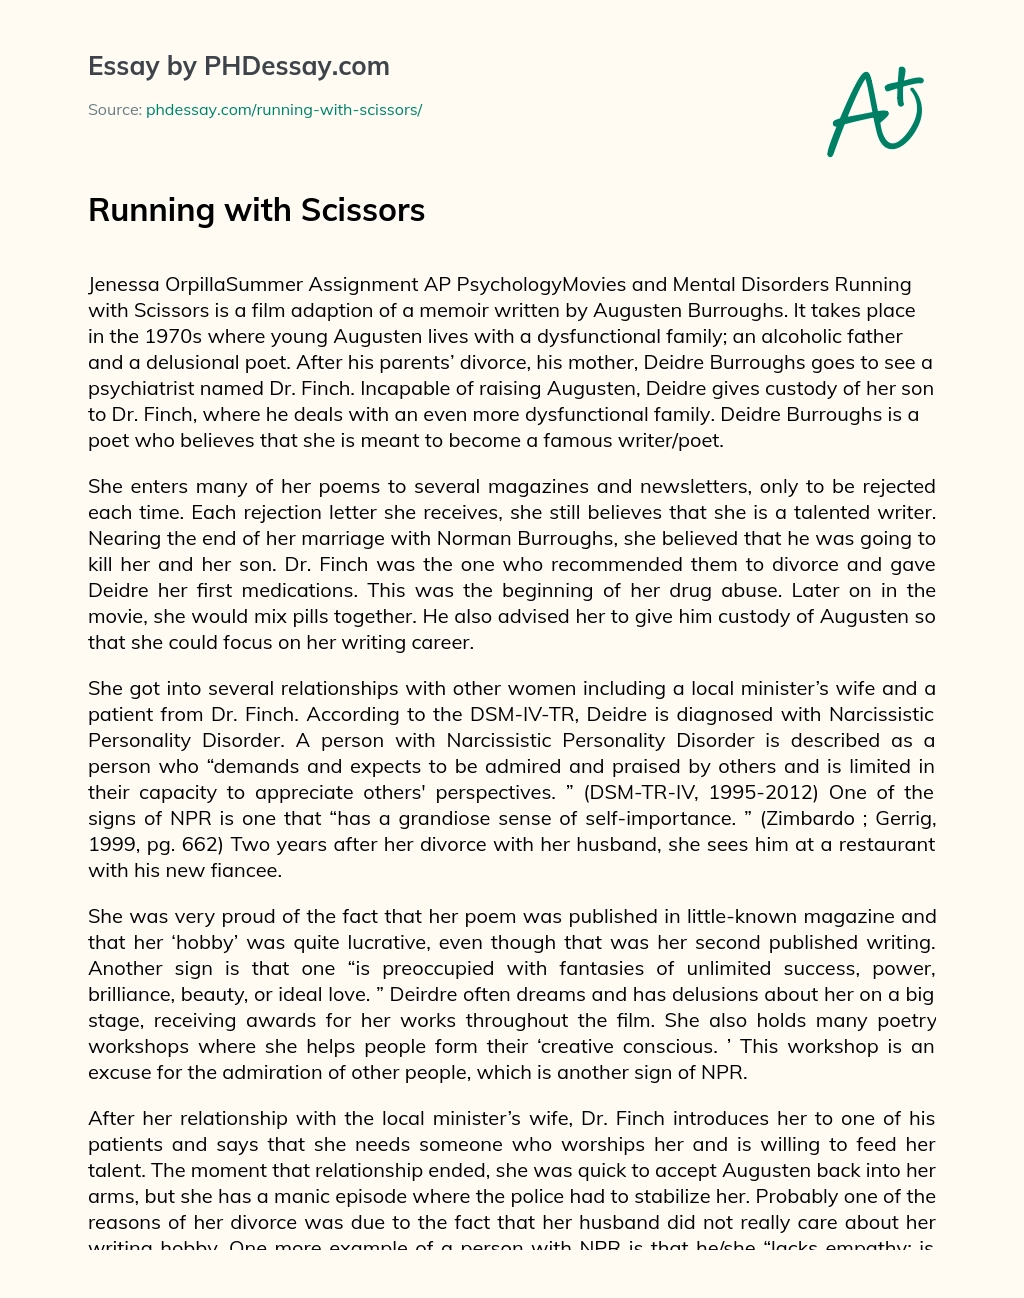 Running with Scissors essay